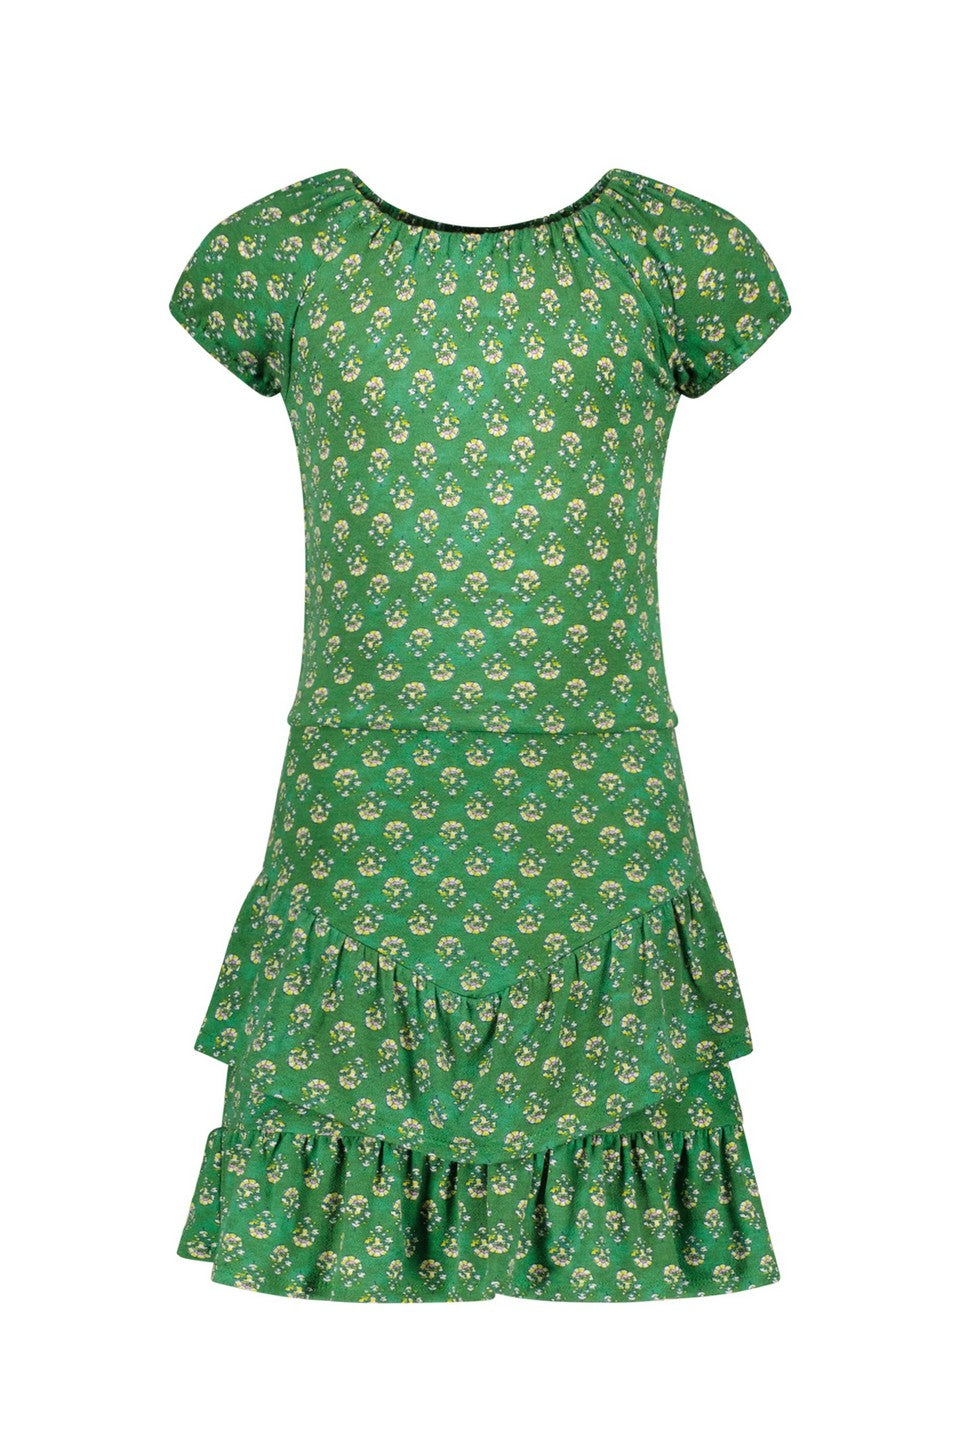 Meisjes Crepe Jersey Dress van Like Flo in de kleur Green flower in maat 140.